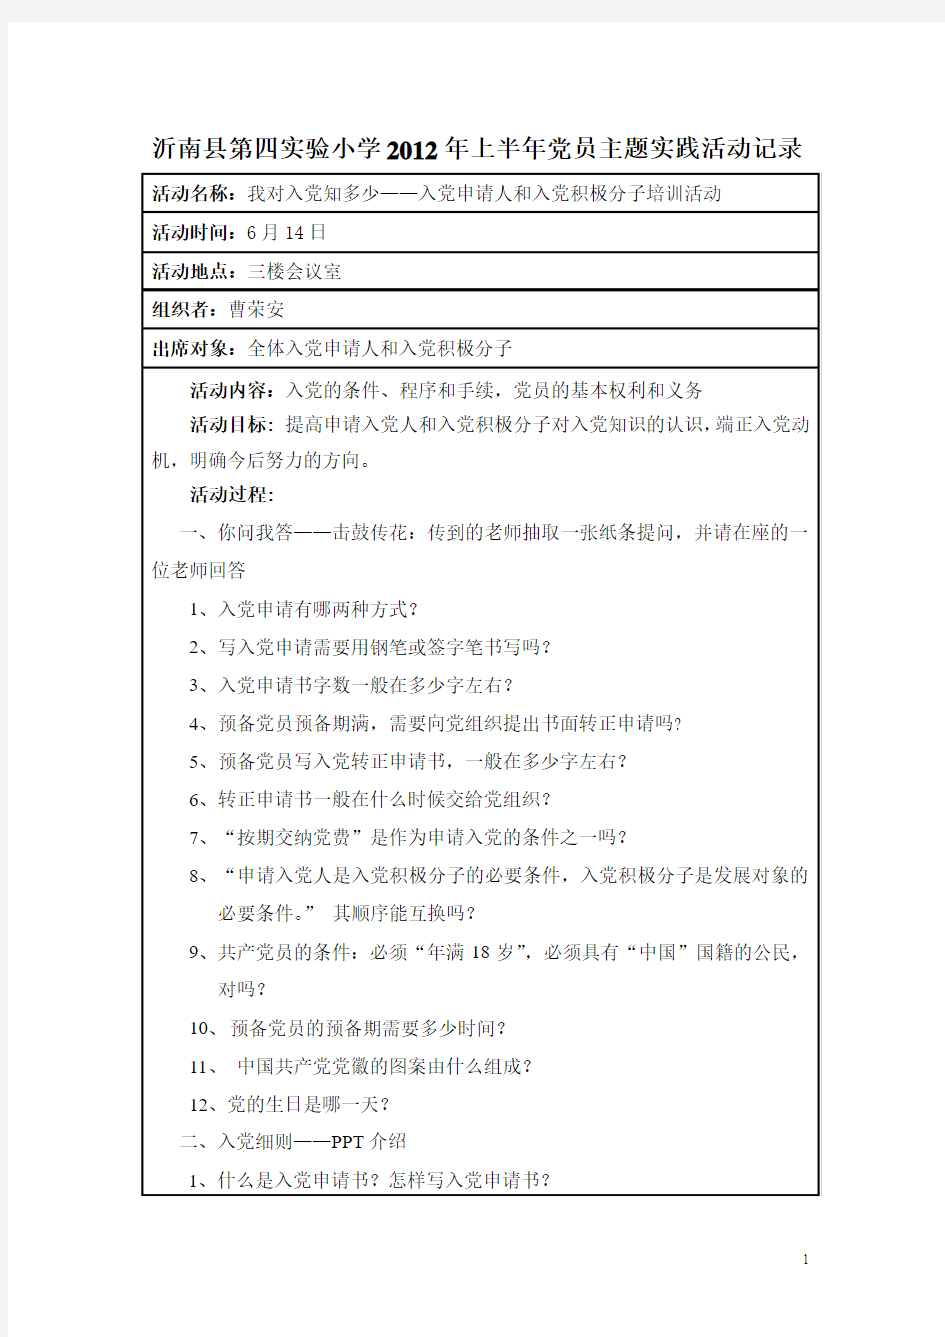 沂南县第四实验小学2012年上半年党员主题实践活动记录